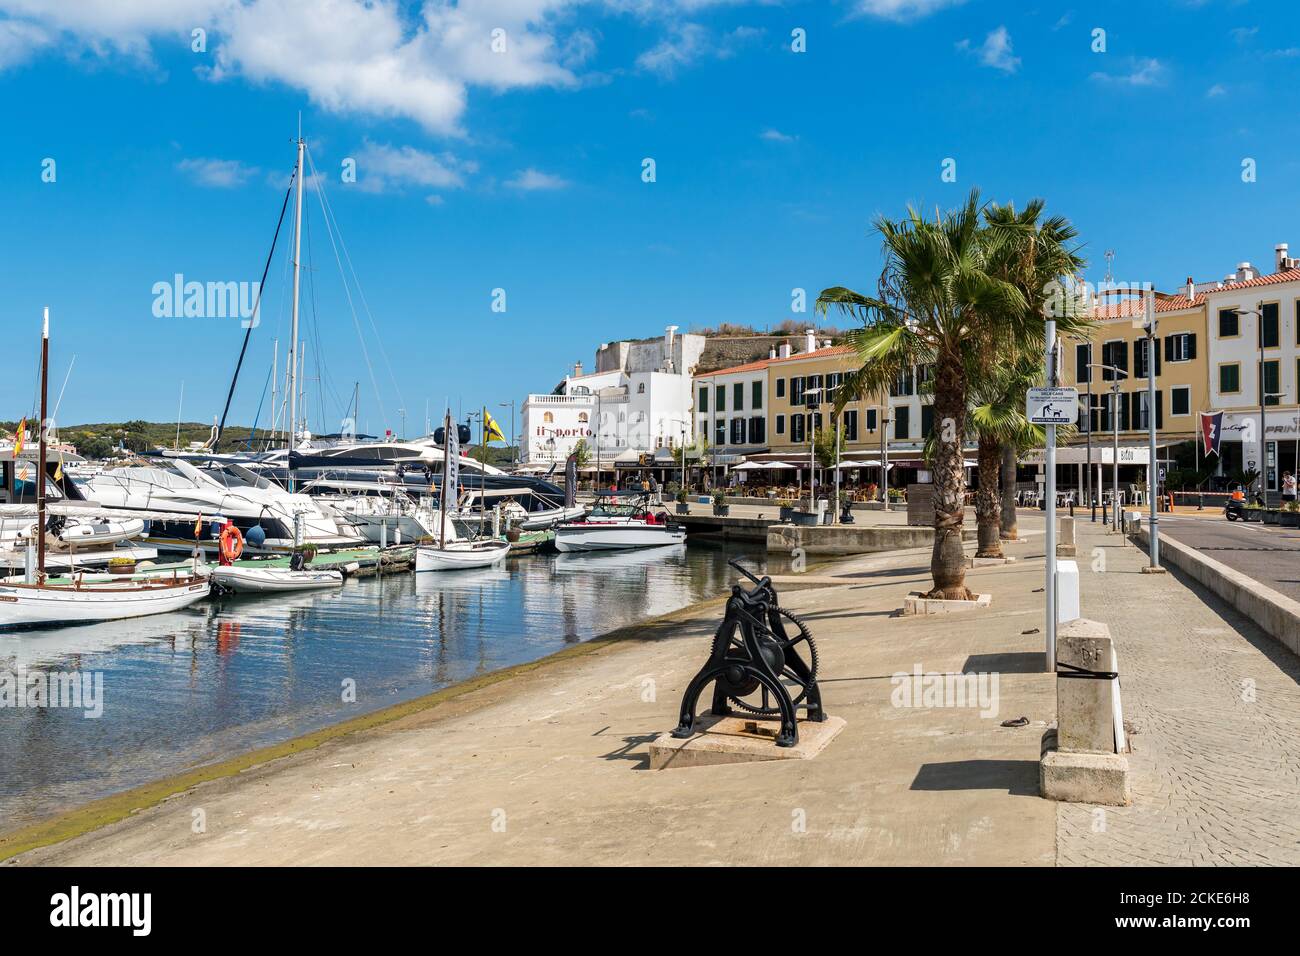 Porto di Mahon e paseo maritimo - Mahon, Minorca, Isole Baleari, Spagna Foto Stock